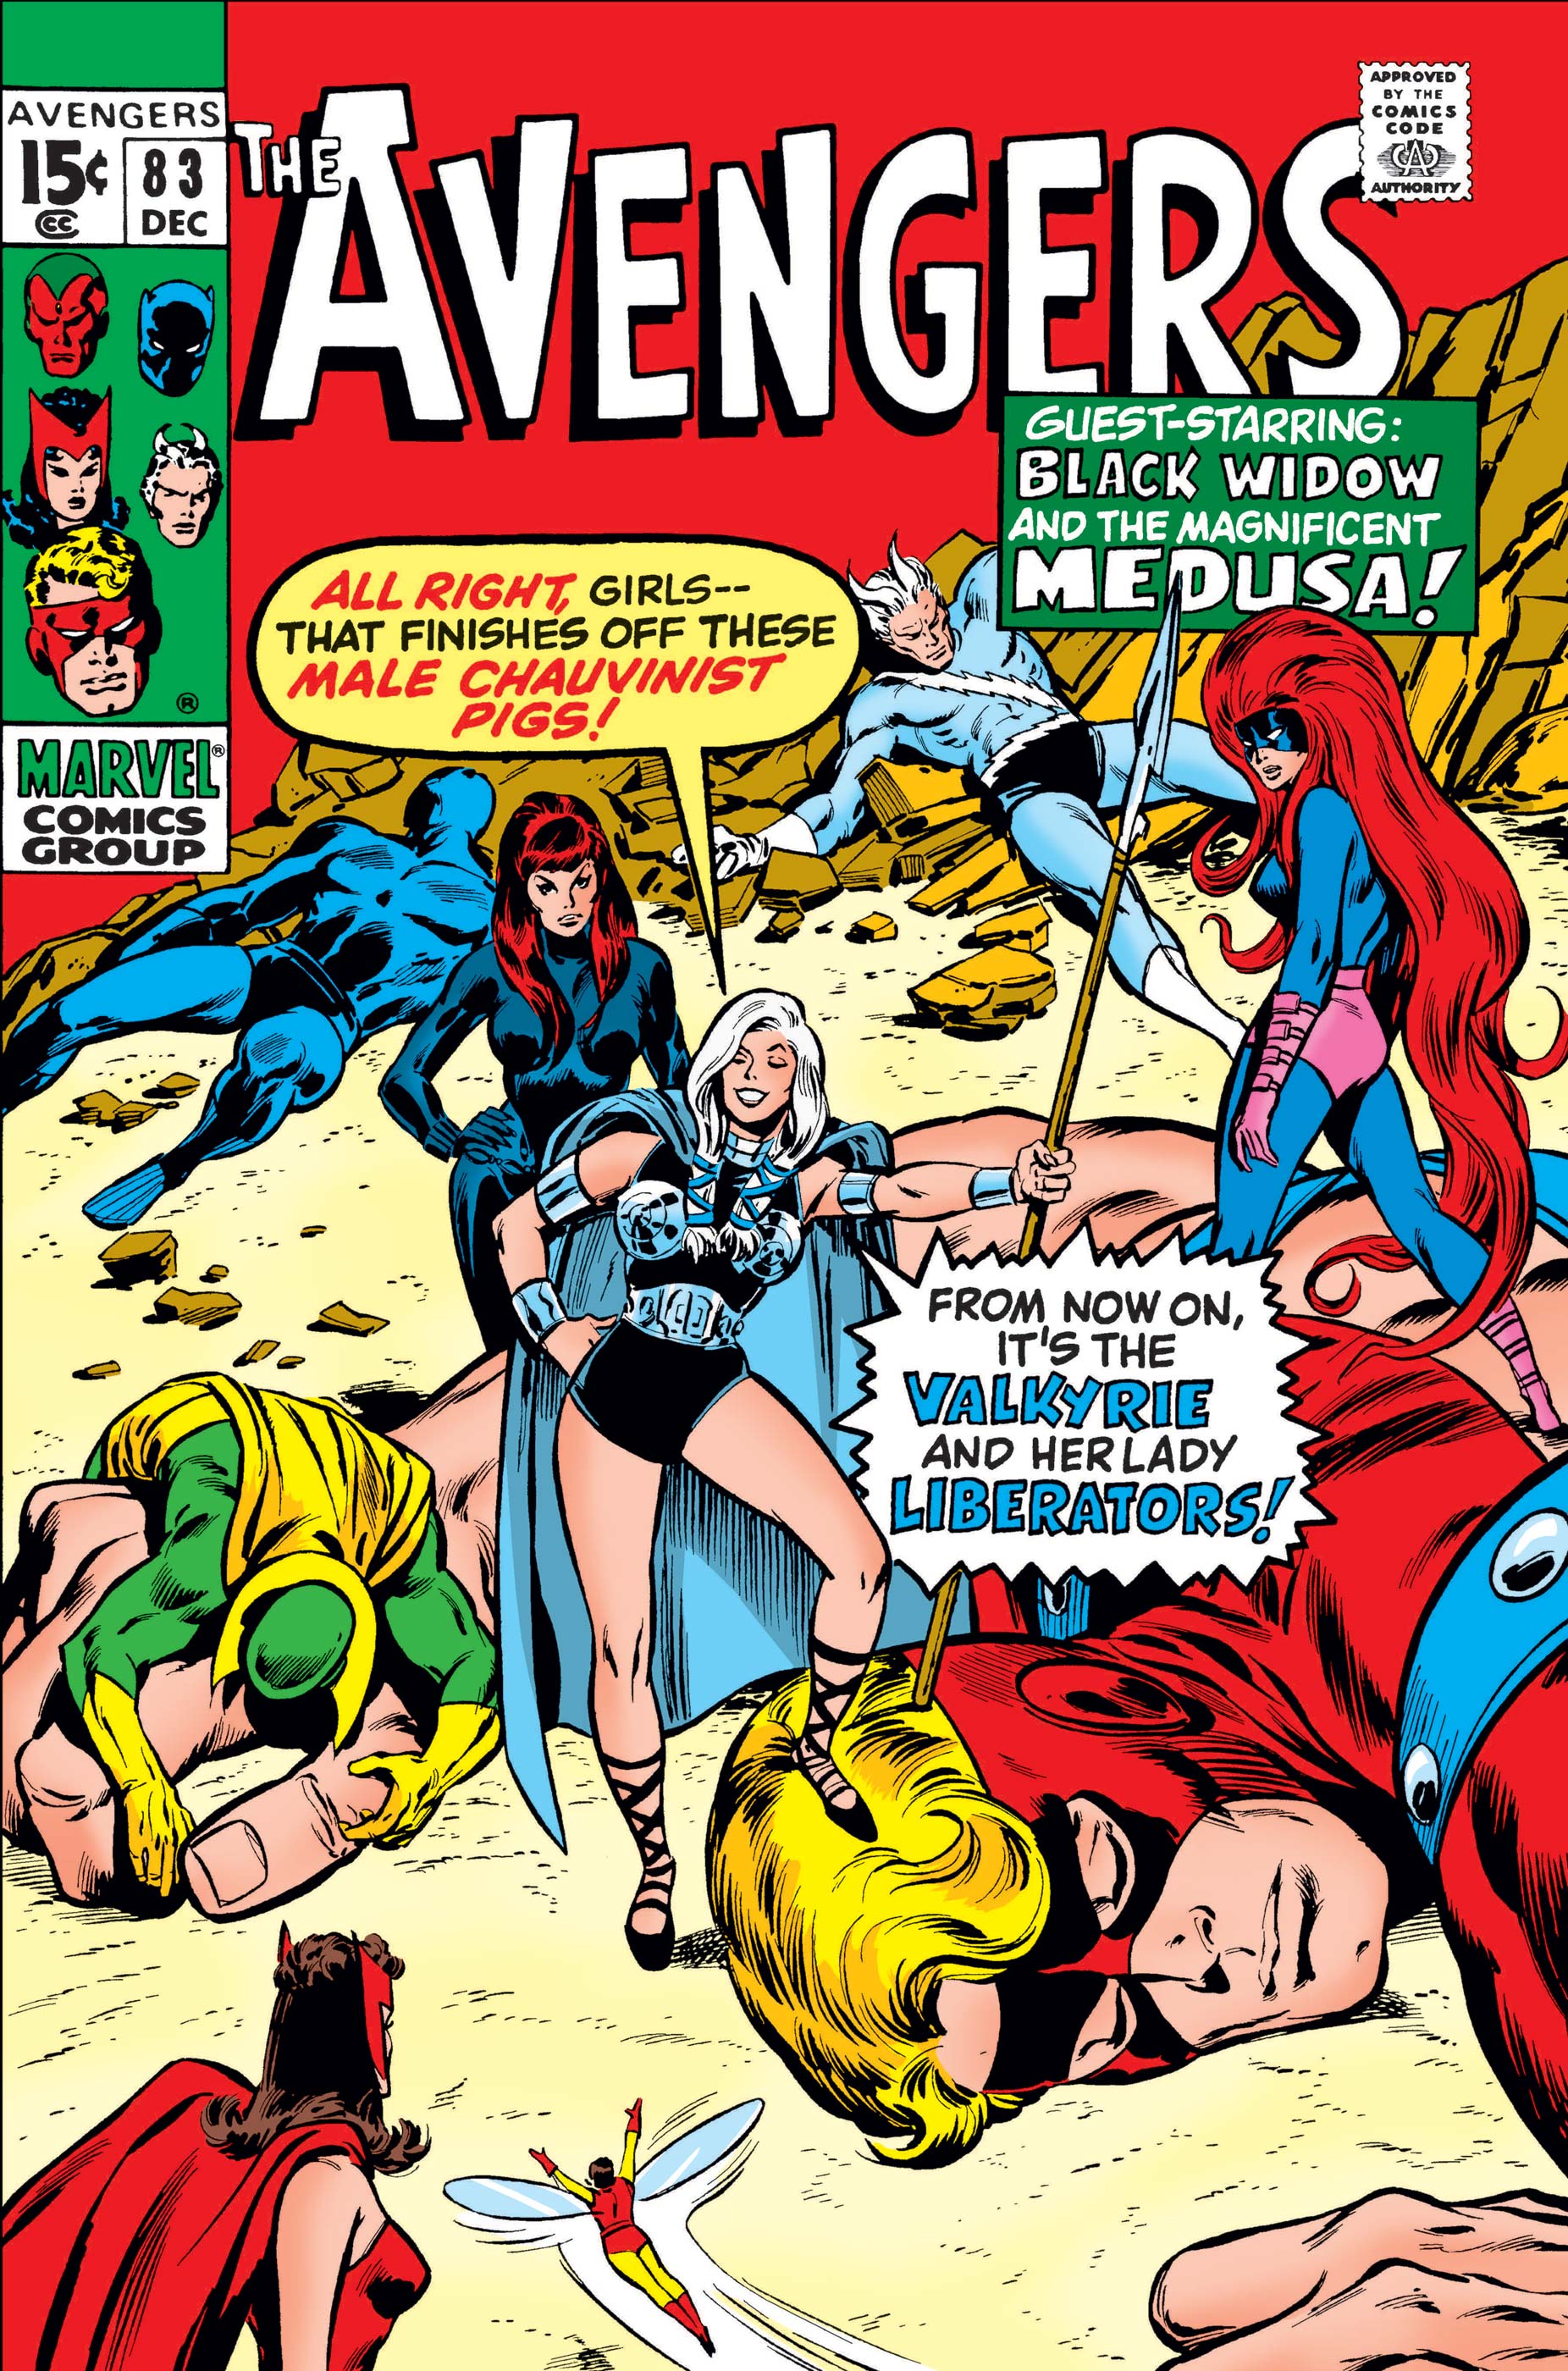 Avengers (1963) #83